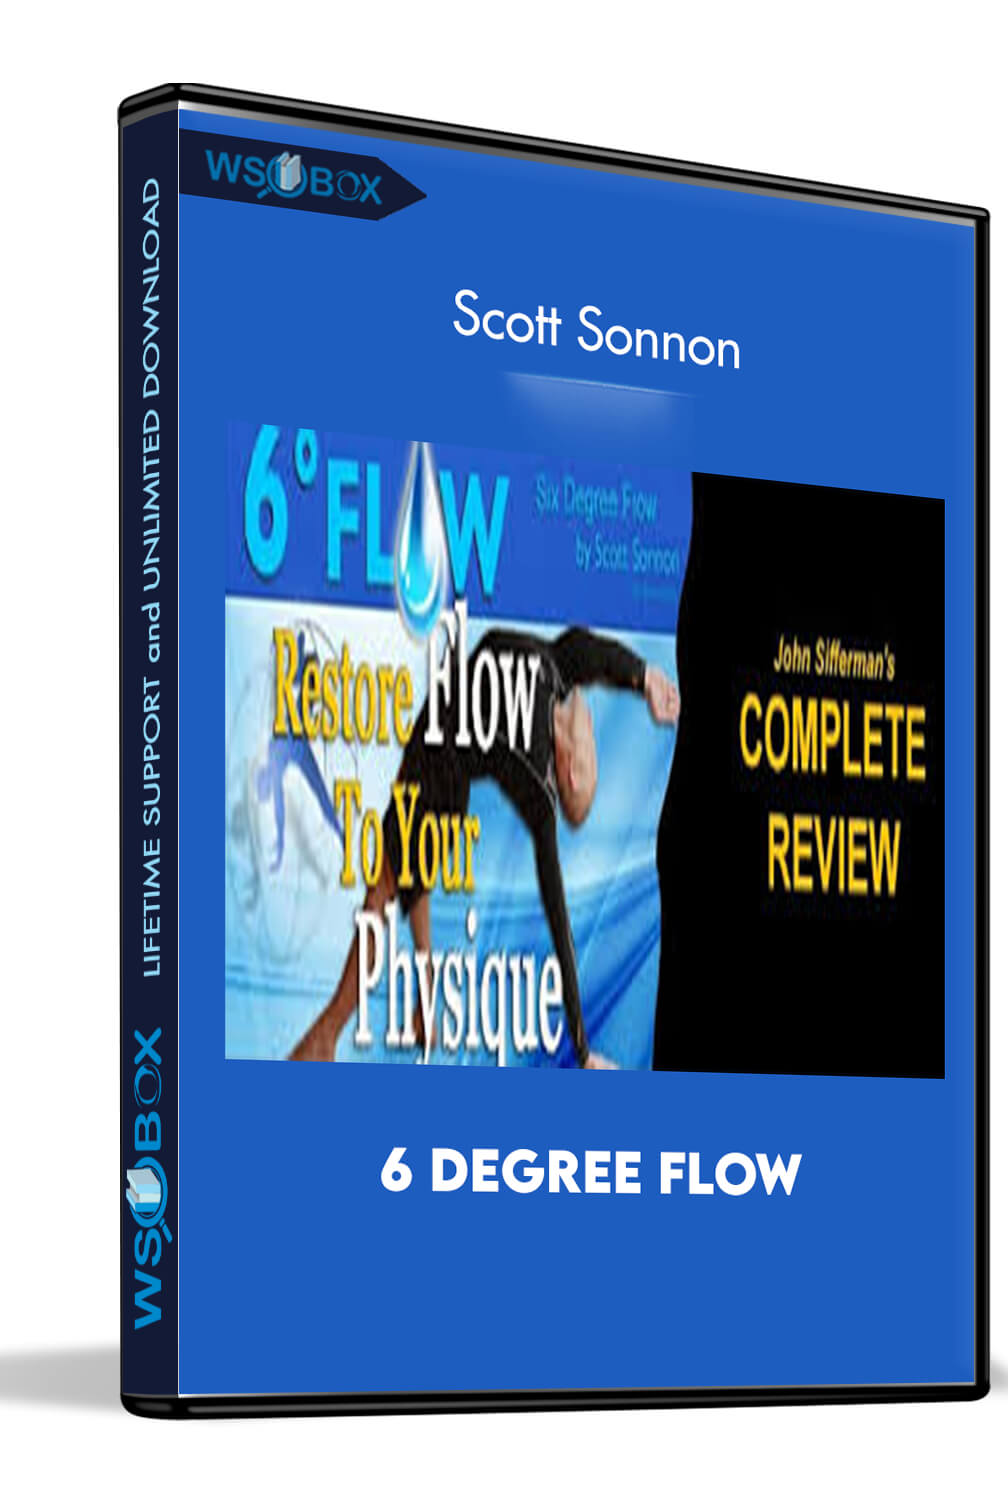 6 Degree Flow – Scott Sonnon